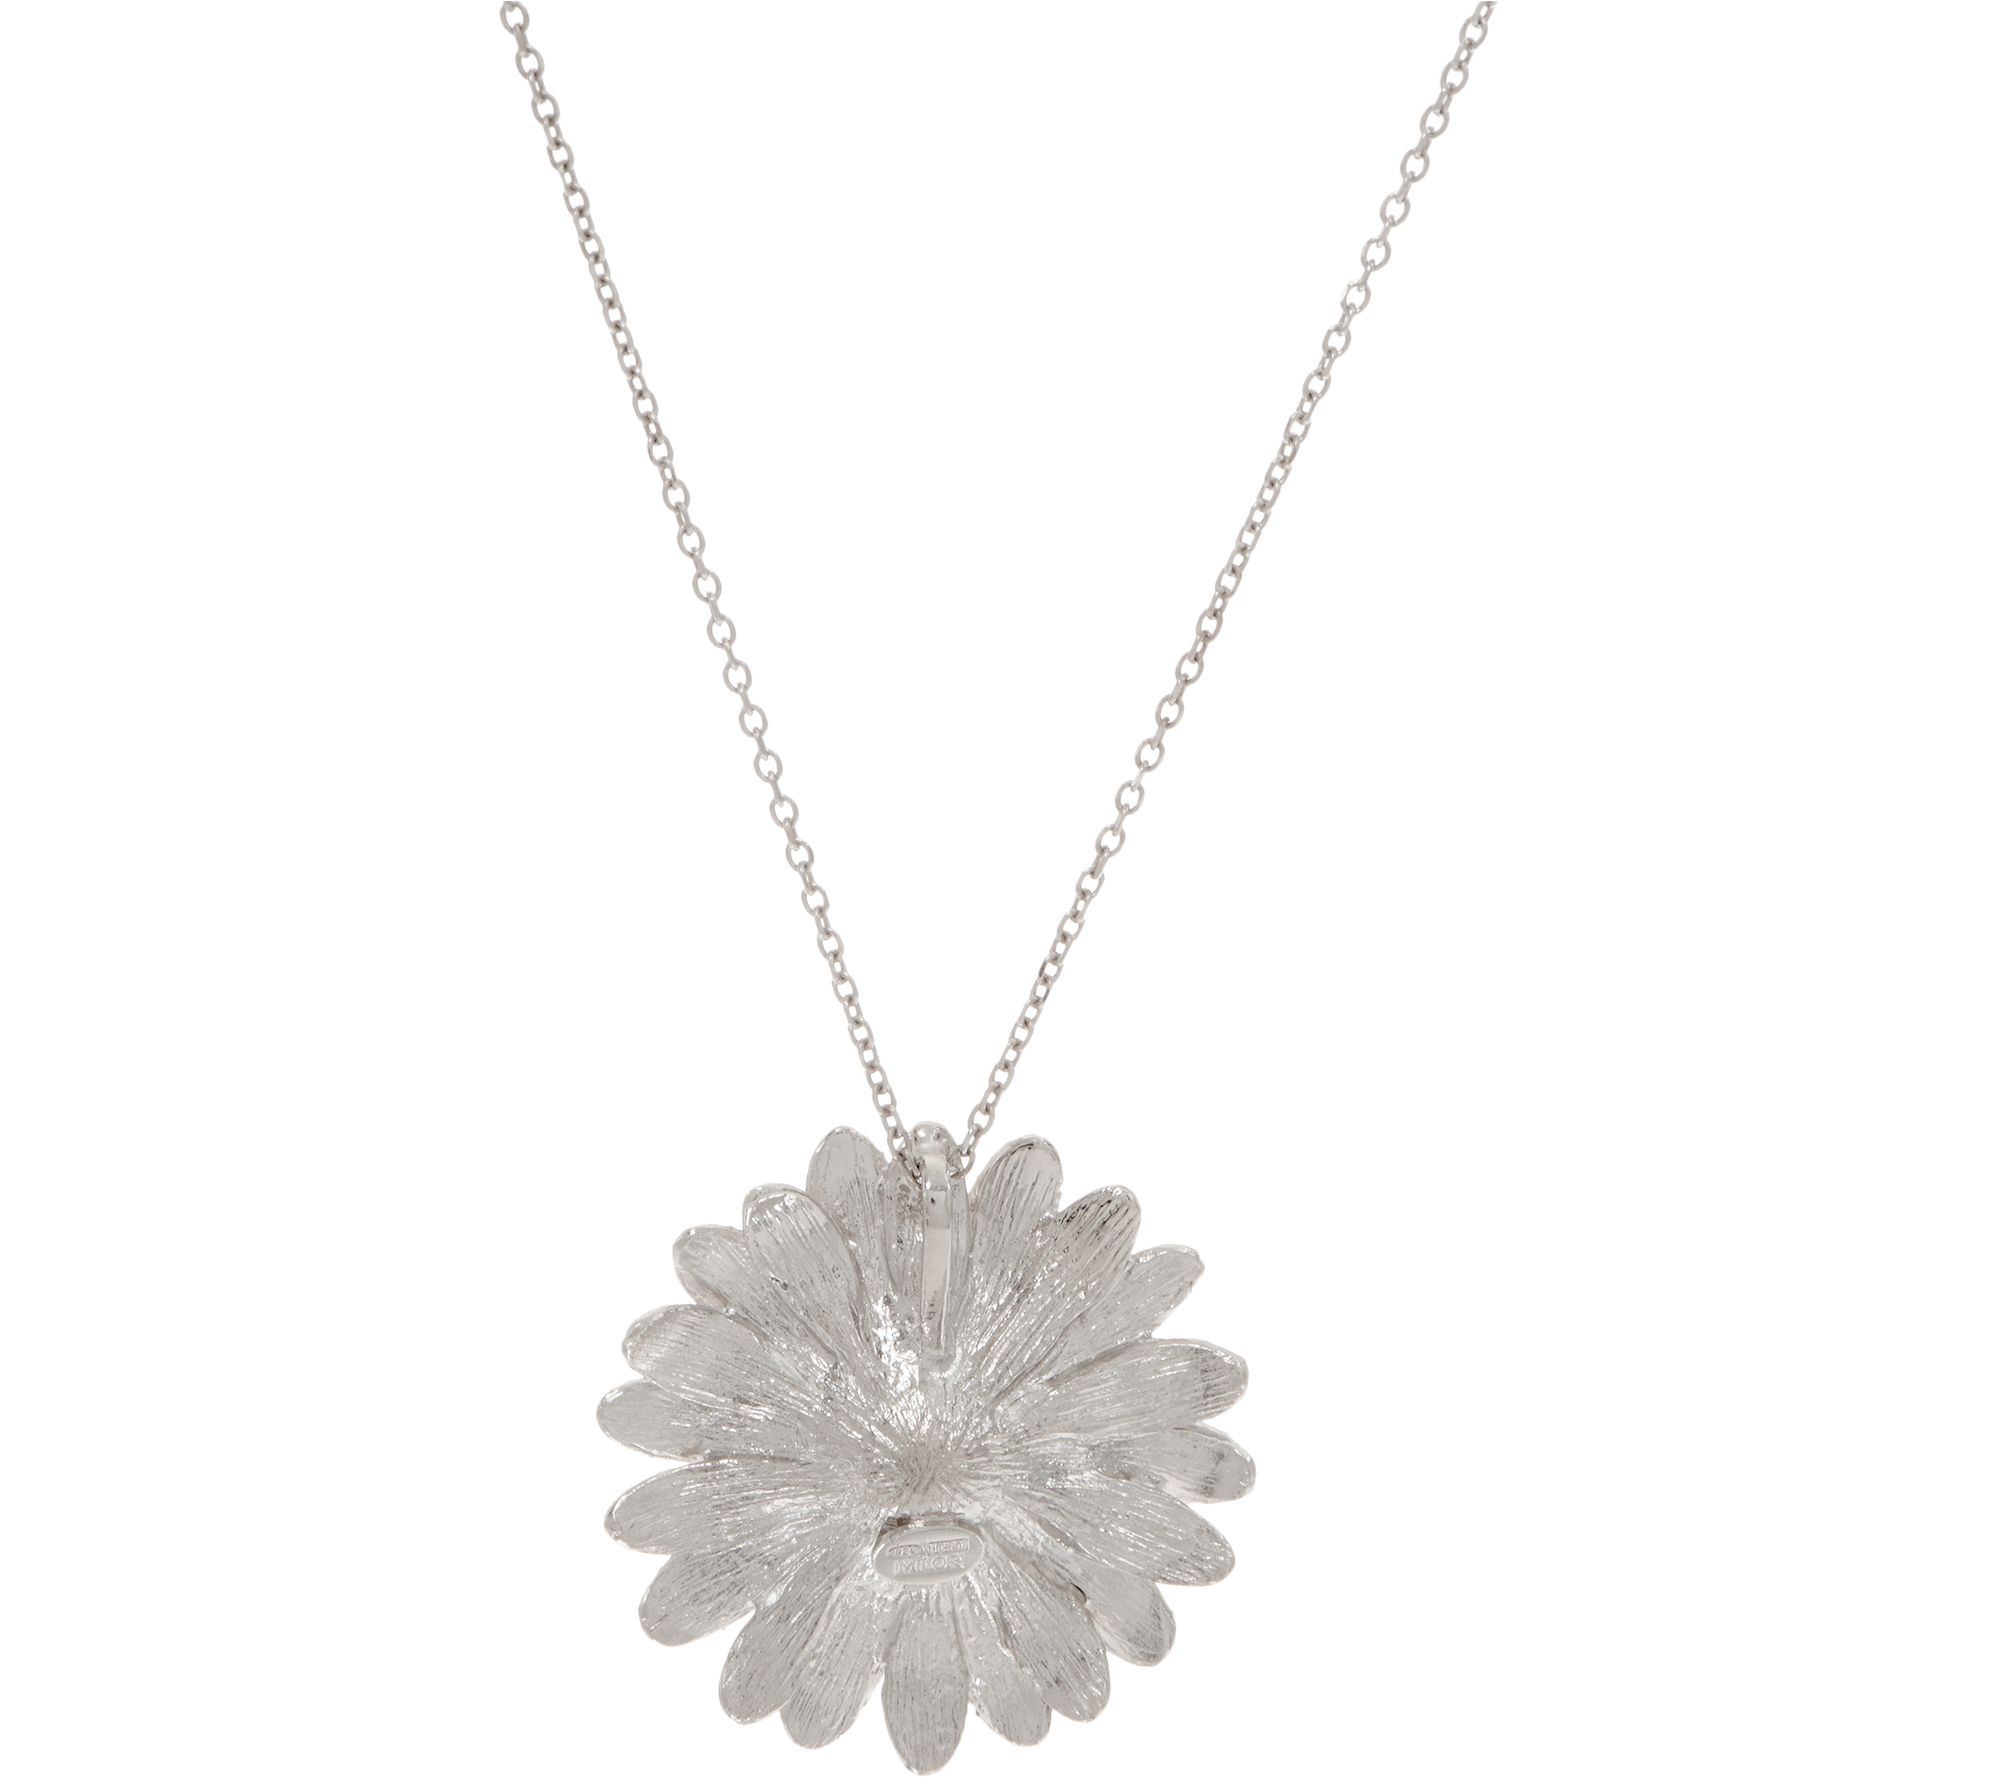 Italian Silver Sterling Flower Pendant w/ 18